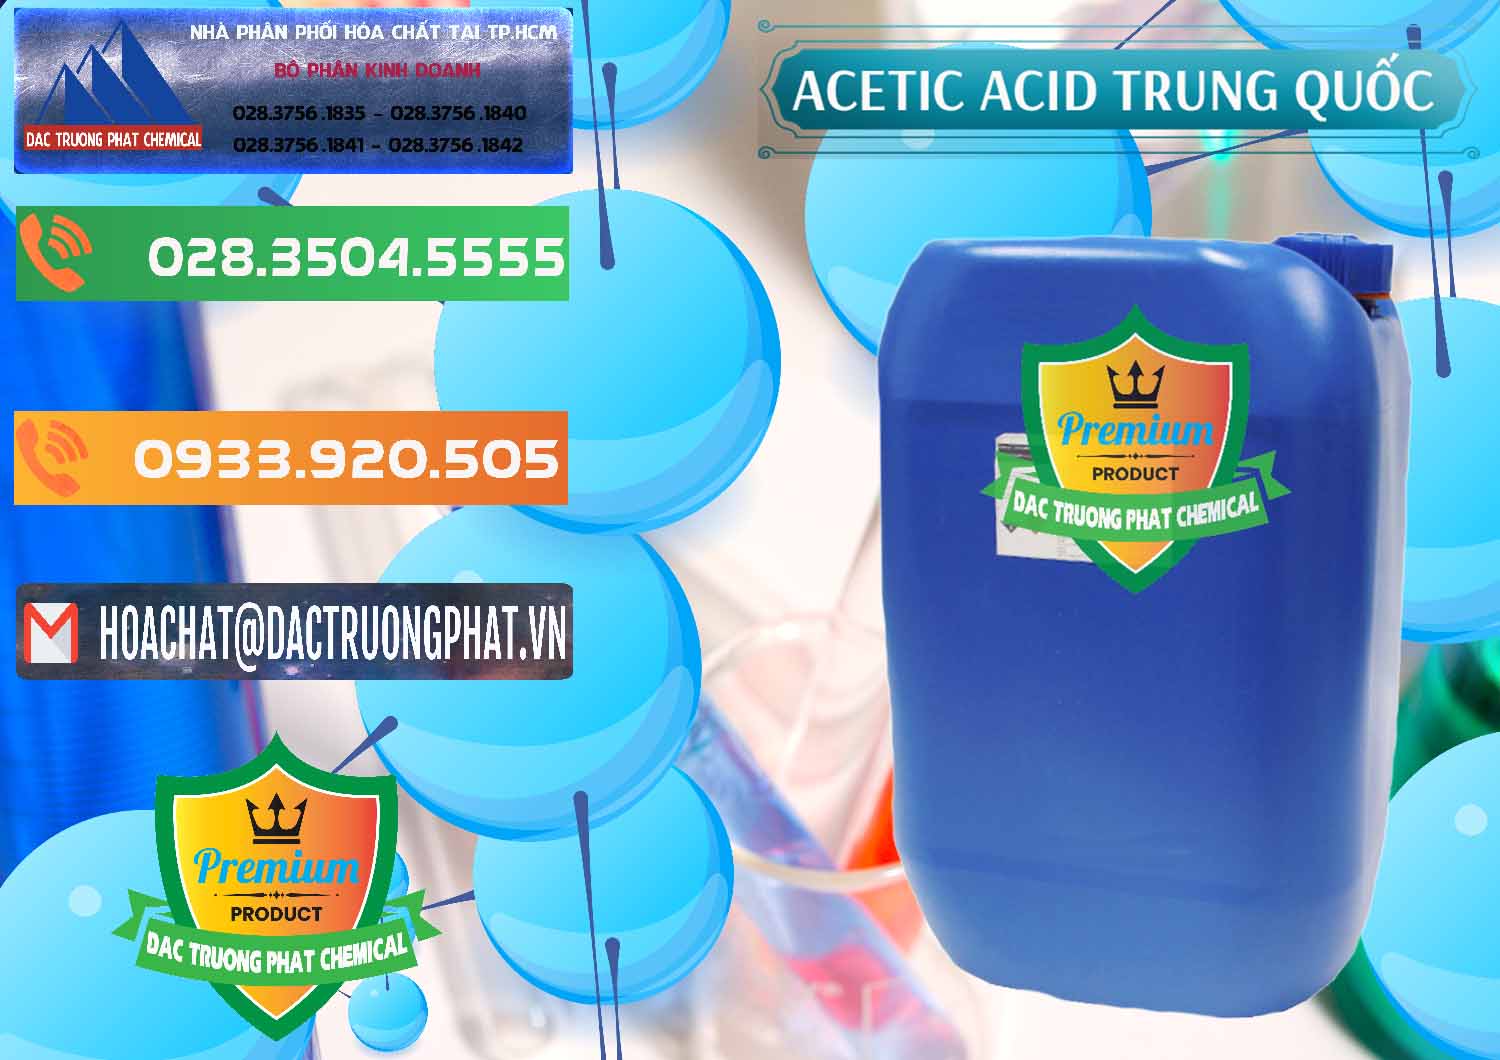 Công ty bán & cung cấp Acetic Acid – Axit Acetic Trung Quốc China - 0358 - Phân phối ( nhập khẩu ) hóa chất tại TP.HCM - hoachatxulynuoc.com.vn